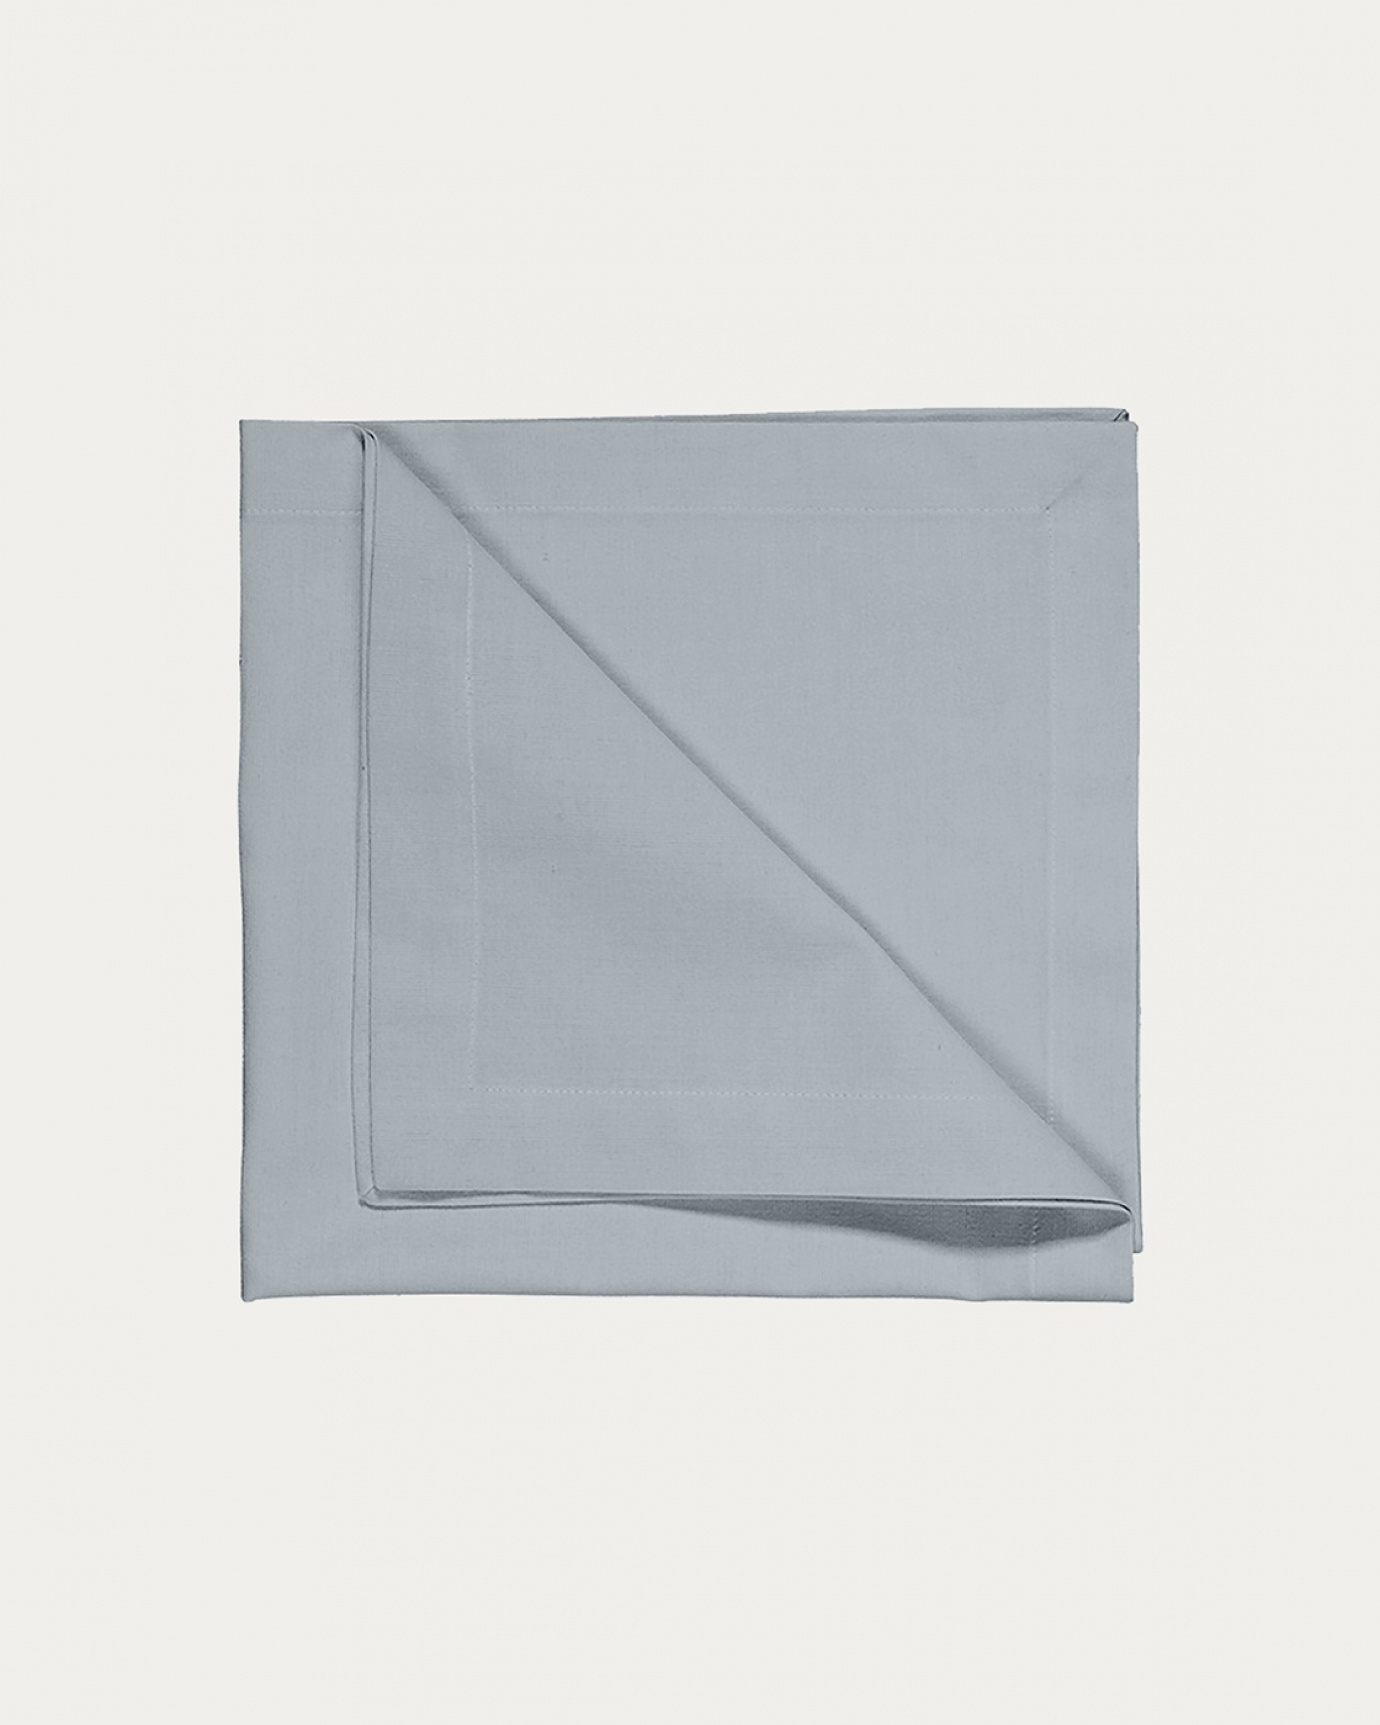 Produktbild ljus gråblå ROBERT servett av mjuk bomull från LINUM DESIGN. Storlek 45x45 cm och säljs i 4 pack.